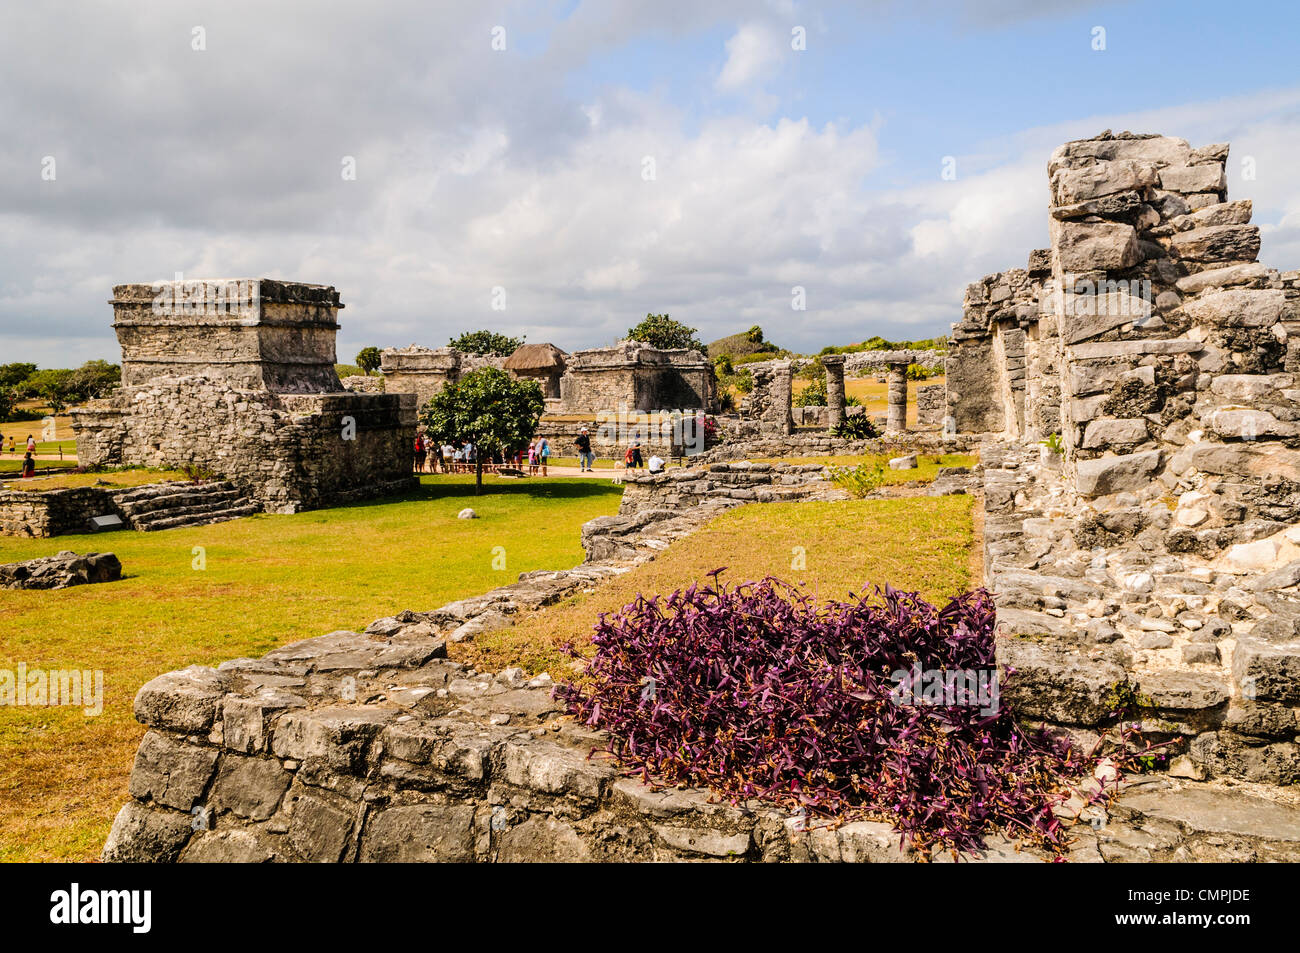 Die Ruinen der Maya-Zivilisation-Stadt in Tulum an der Küste der mexikanischen Halbinsel Yucatan. Es war einst bekannt als Zama (Morgenröte) denn am äußersten Ostrand von Mexiko, es war einer der ersten Orte im Land die Dämmerung zu sehen. Tulum war ein Handelshafen, die ausgiebig in ganz Mittelamerika und Mexiko gehandelt. Es ist jetzt ein beliebtes Touristenziel in Partei, weil es an schönen karibischen Stränden sitzt. Stockfoto